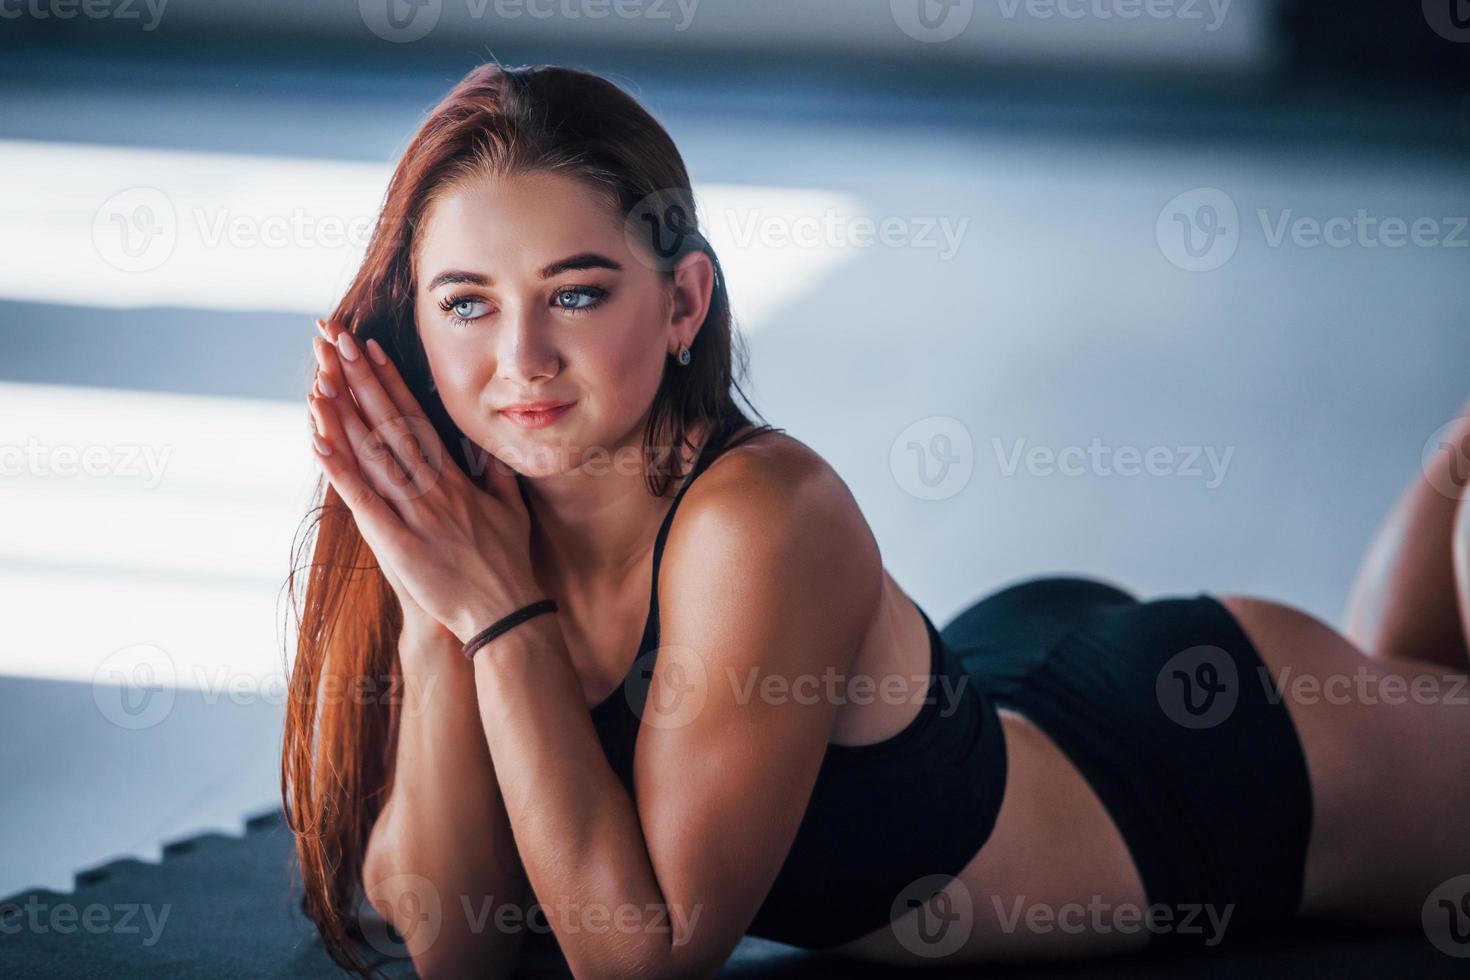 jeune femme au corps mince et en vêtements sportifs noirs allongée sur le tapis de fitness photo